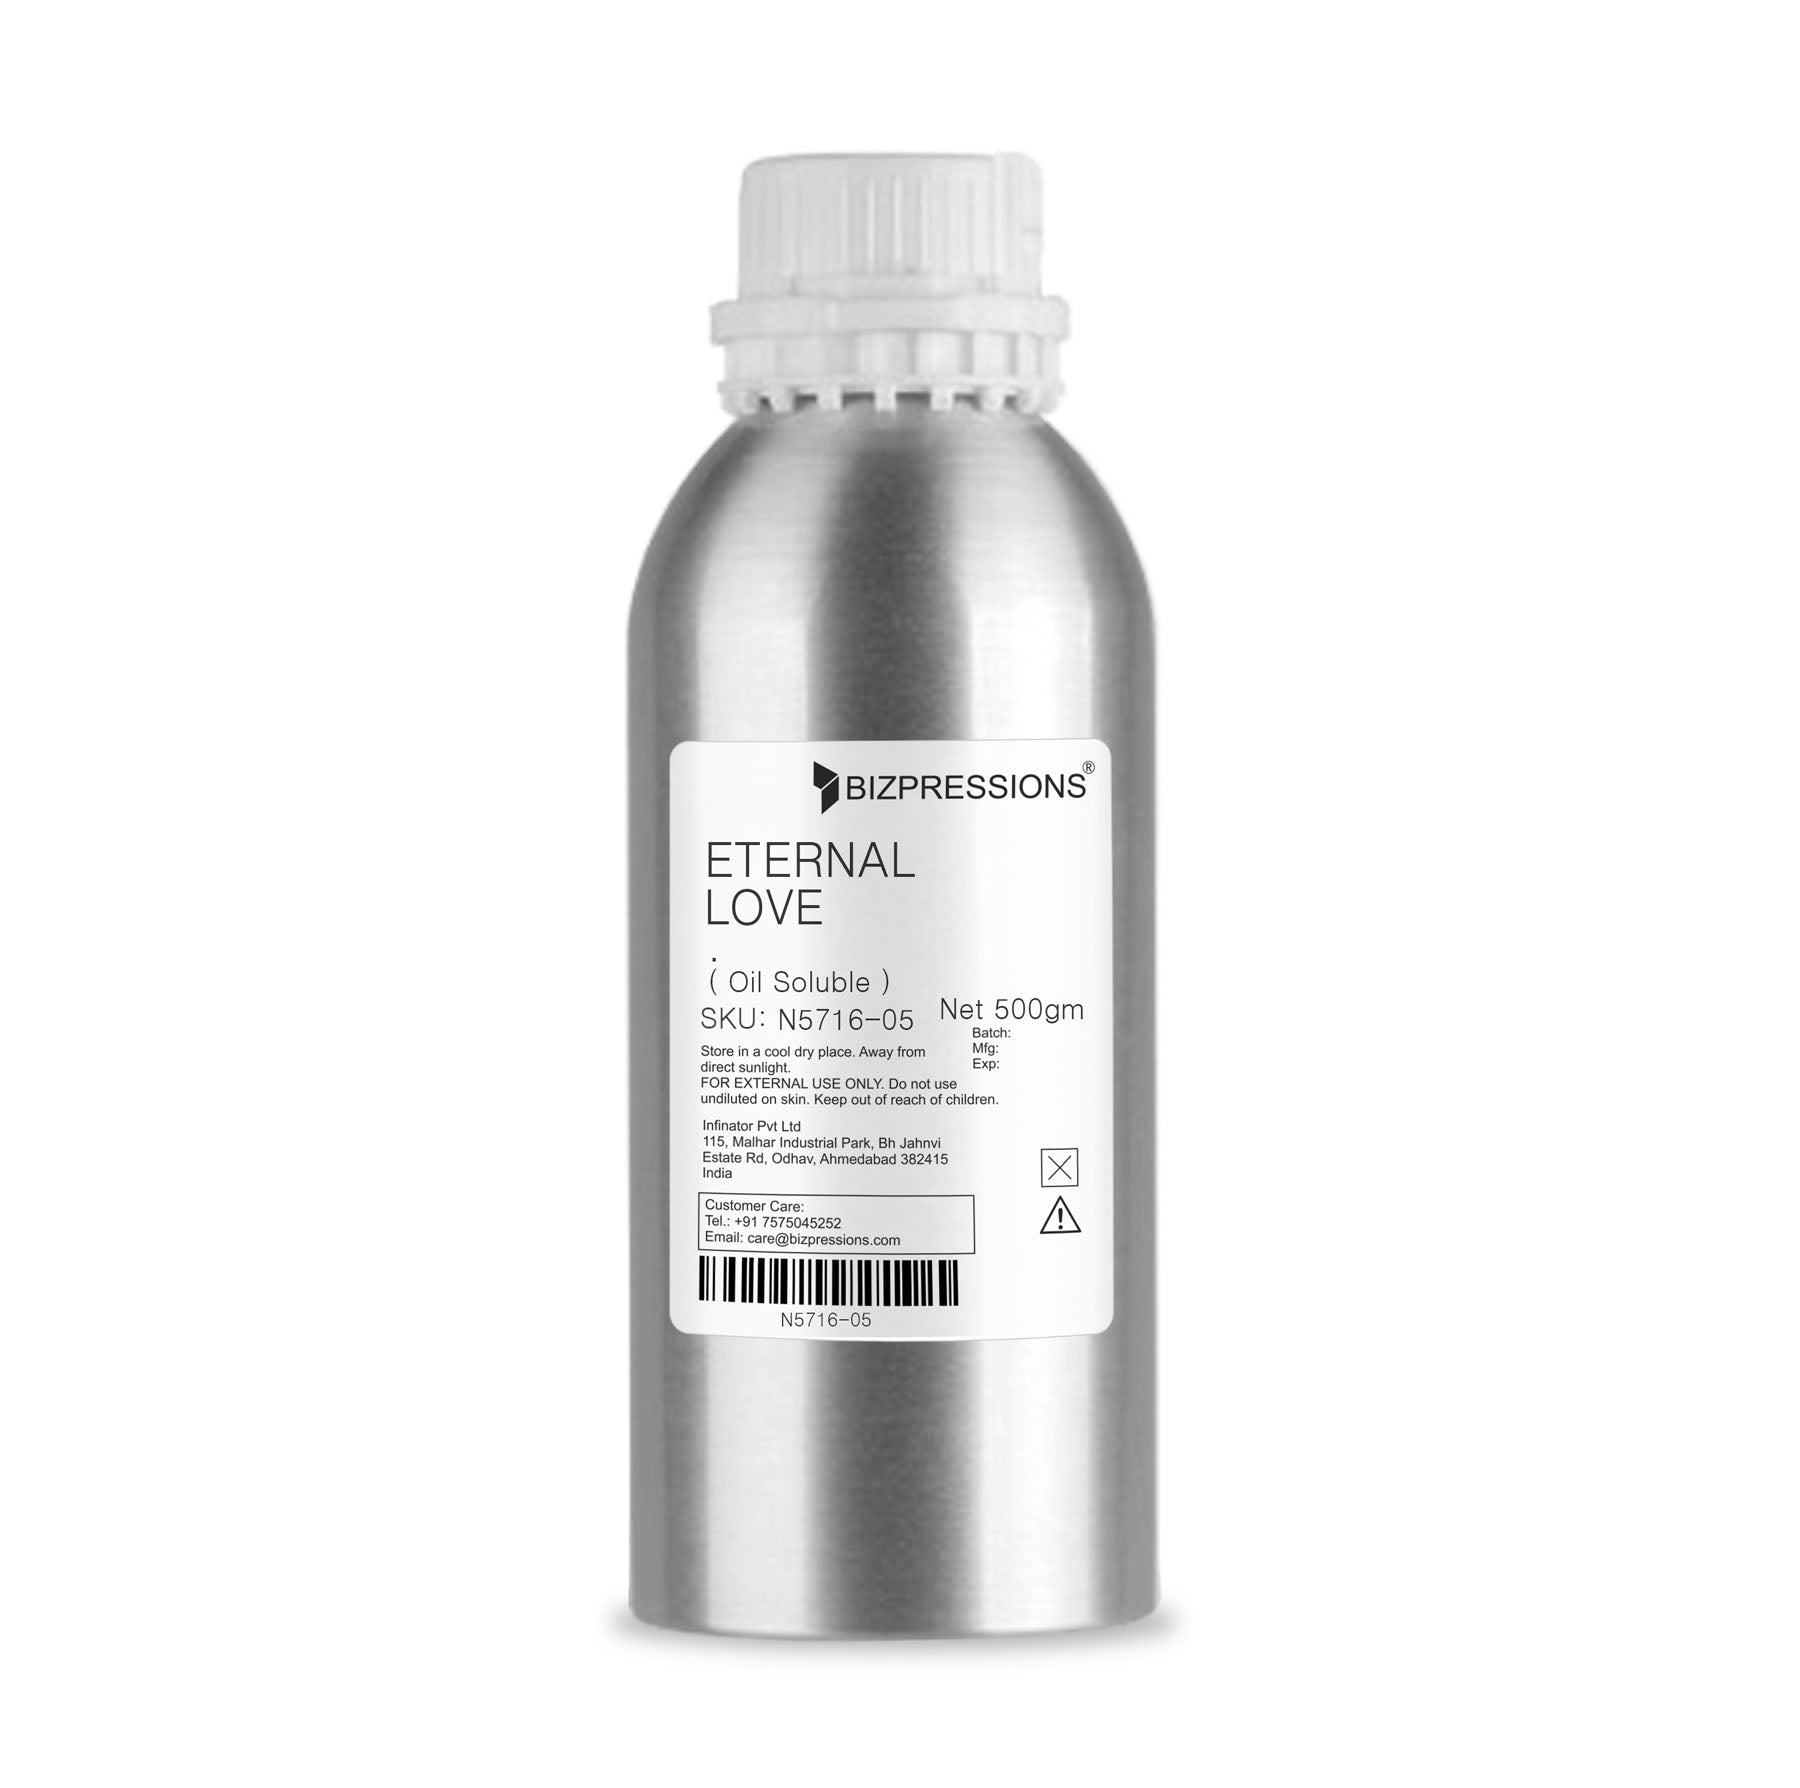 ETERNAL LOVE - Fragrance ( Oil Soluble ) - 500 gm